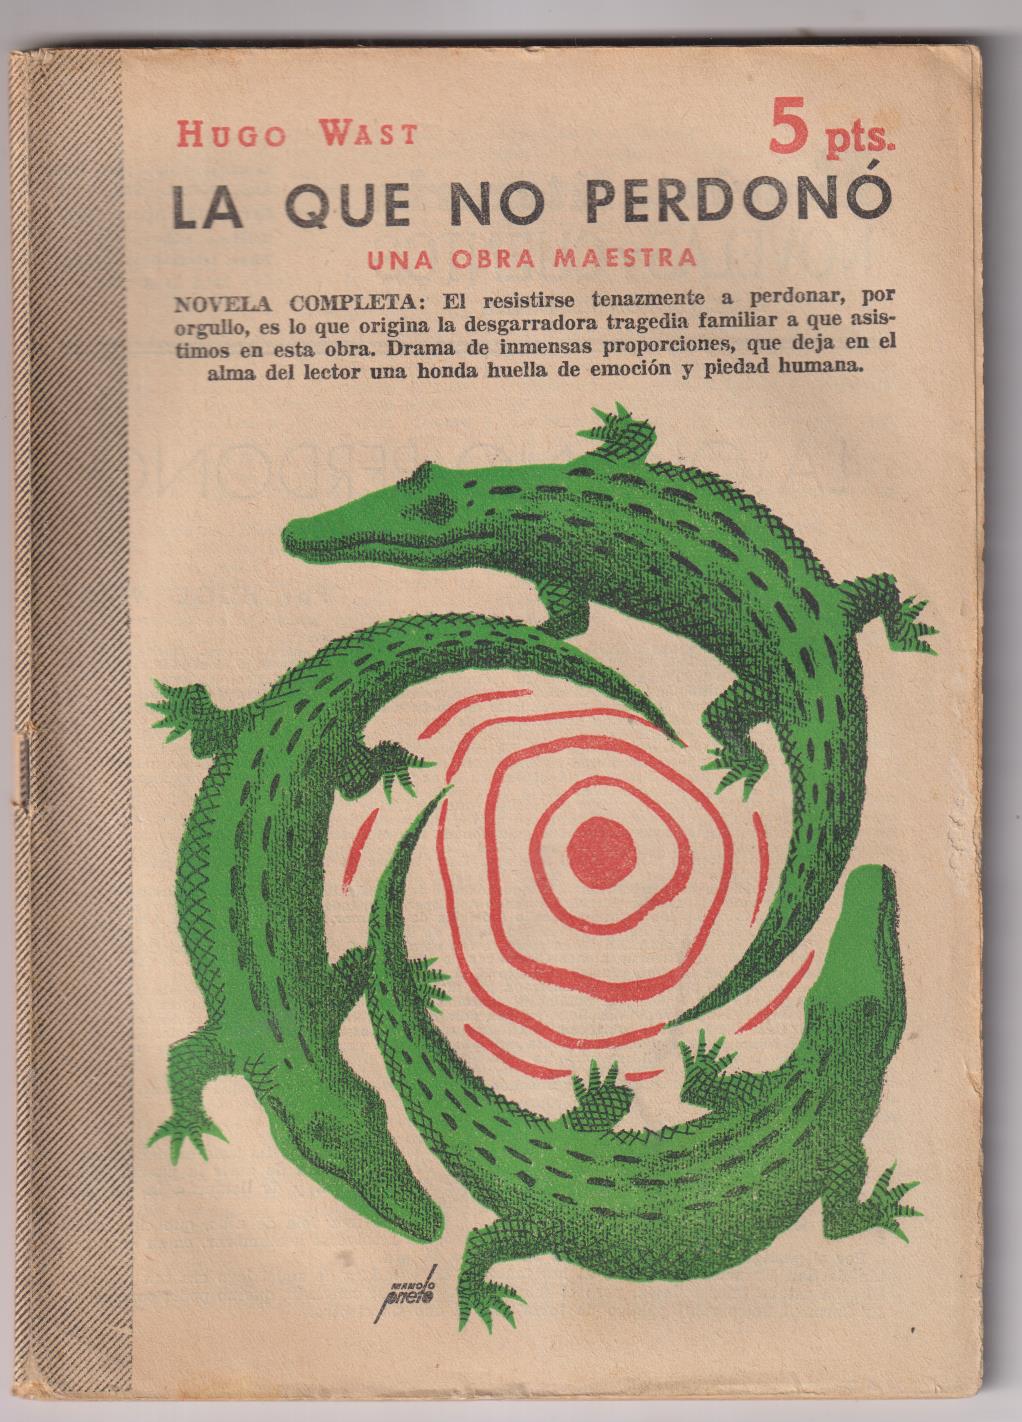 Revista Literaria Novelas y Cuentos nº 1321. Hugo Wast. La que no perdonó. Año 1956